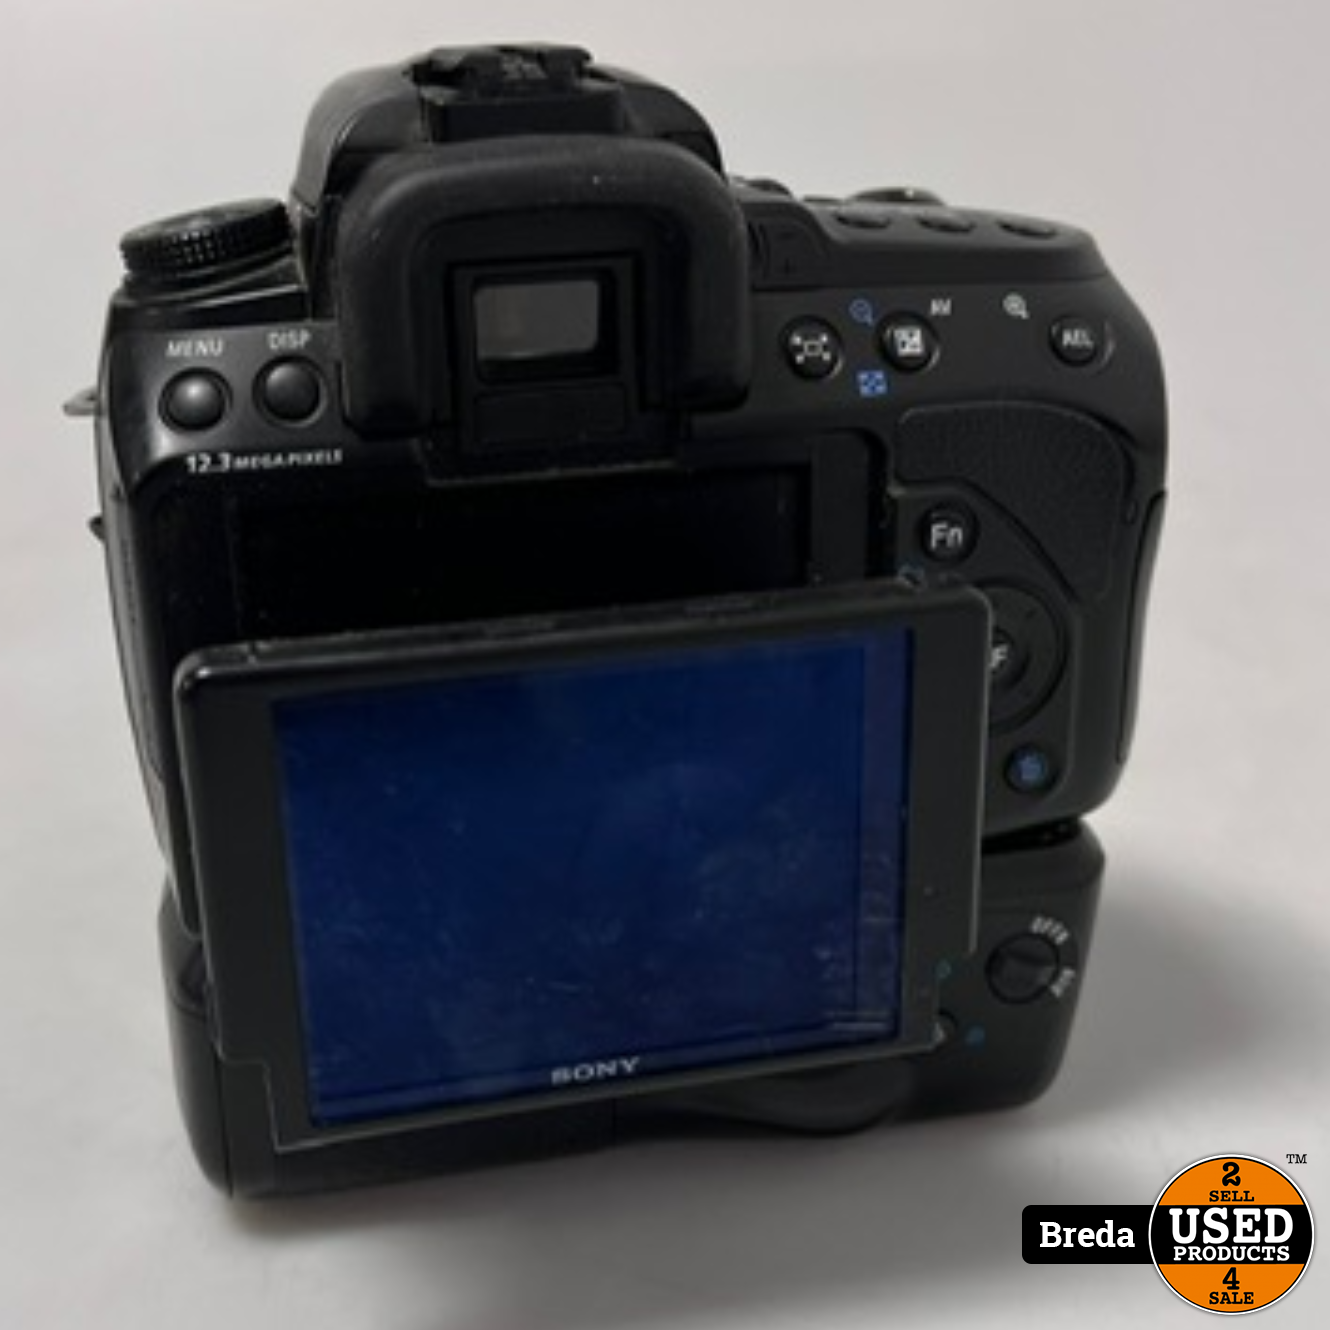 Behoren binair Ontwijken Sony A500 Digitale Camera | Sigma 18-200 Lens | Met Accukit | Met garantie  - Used Products Breda